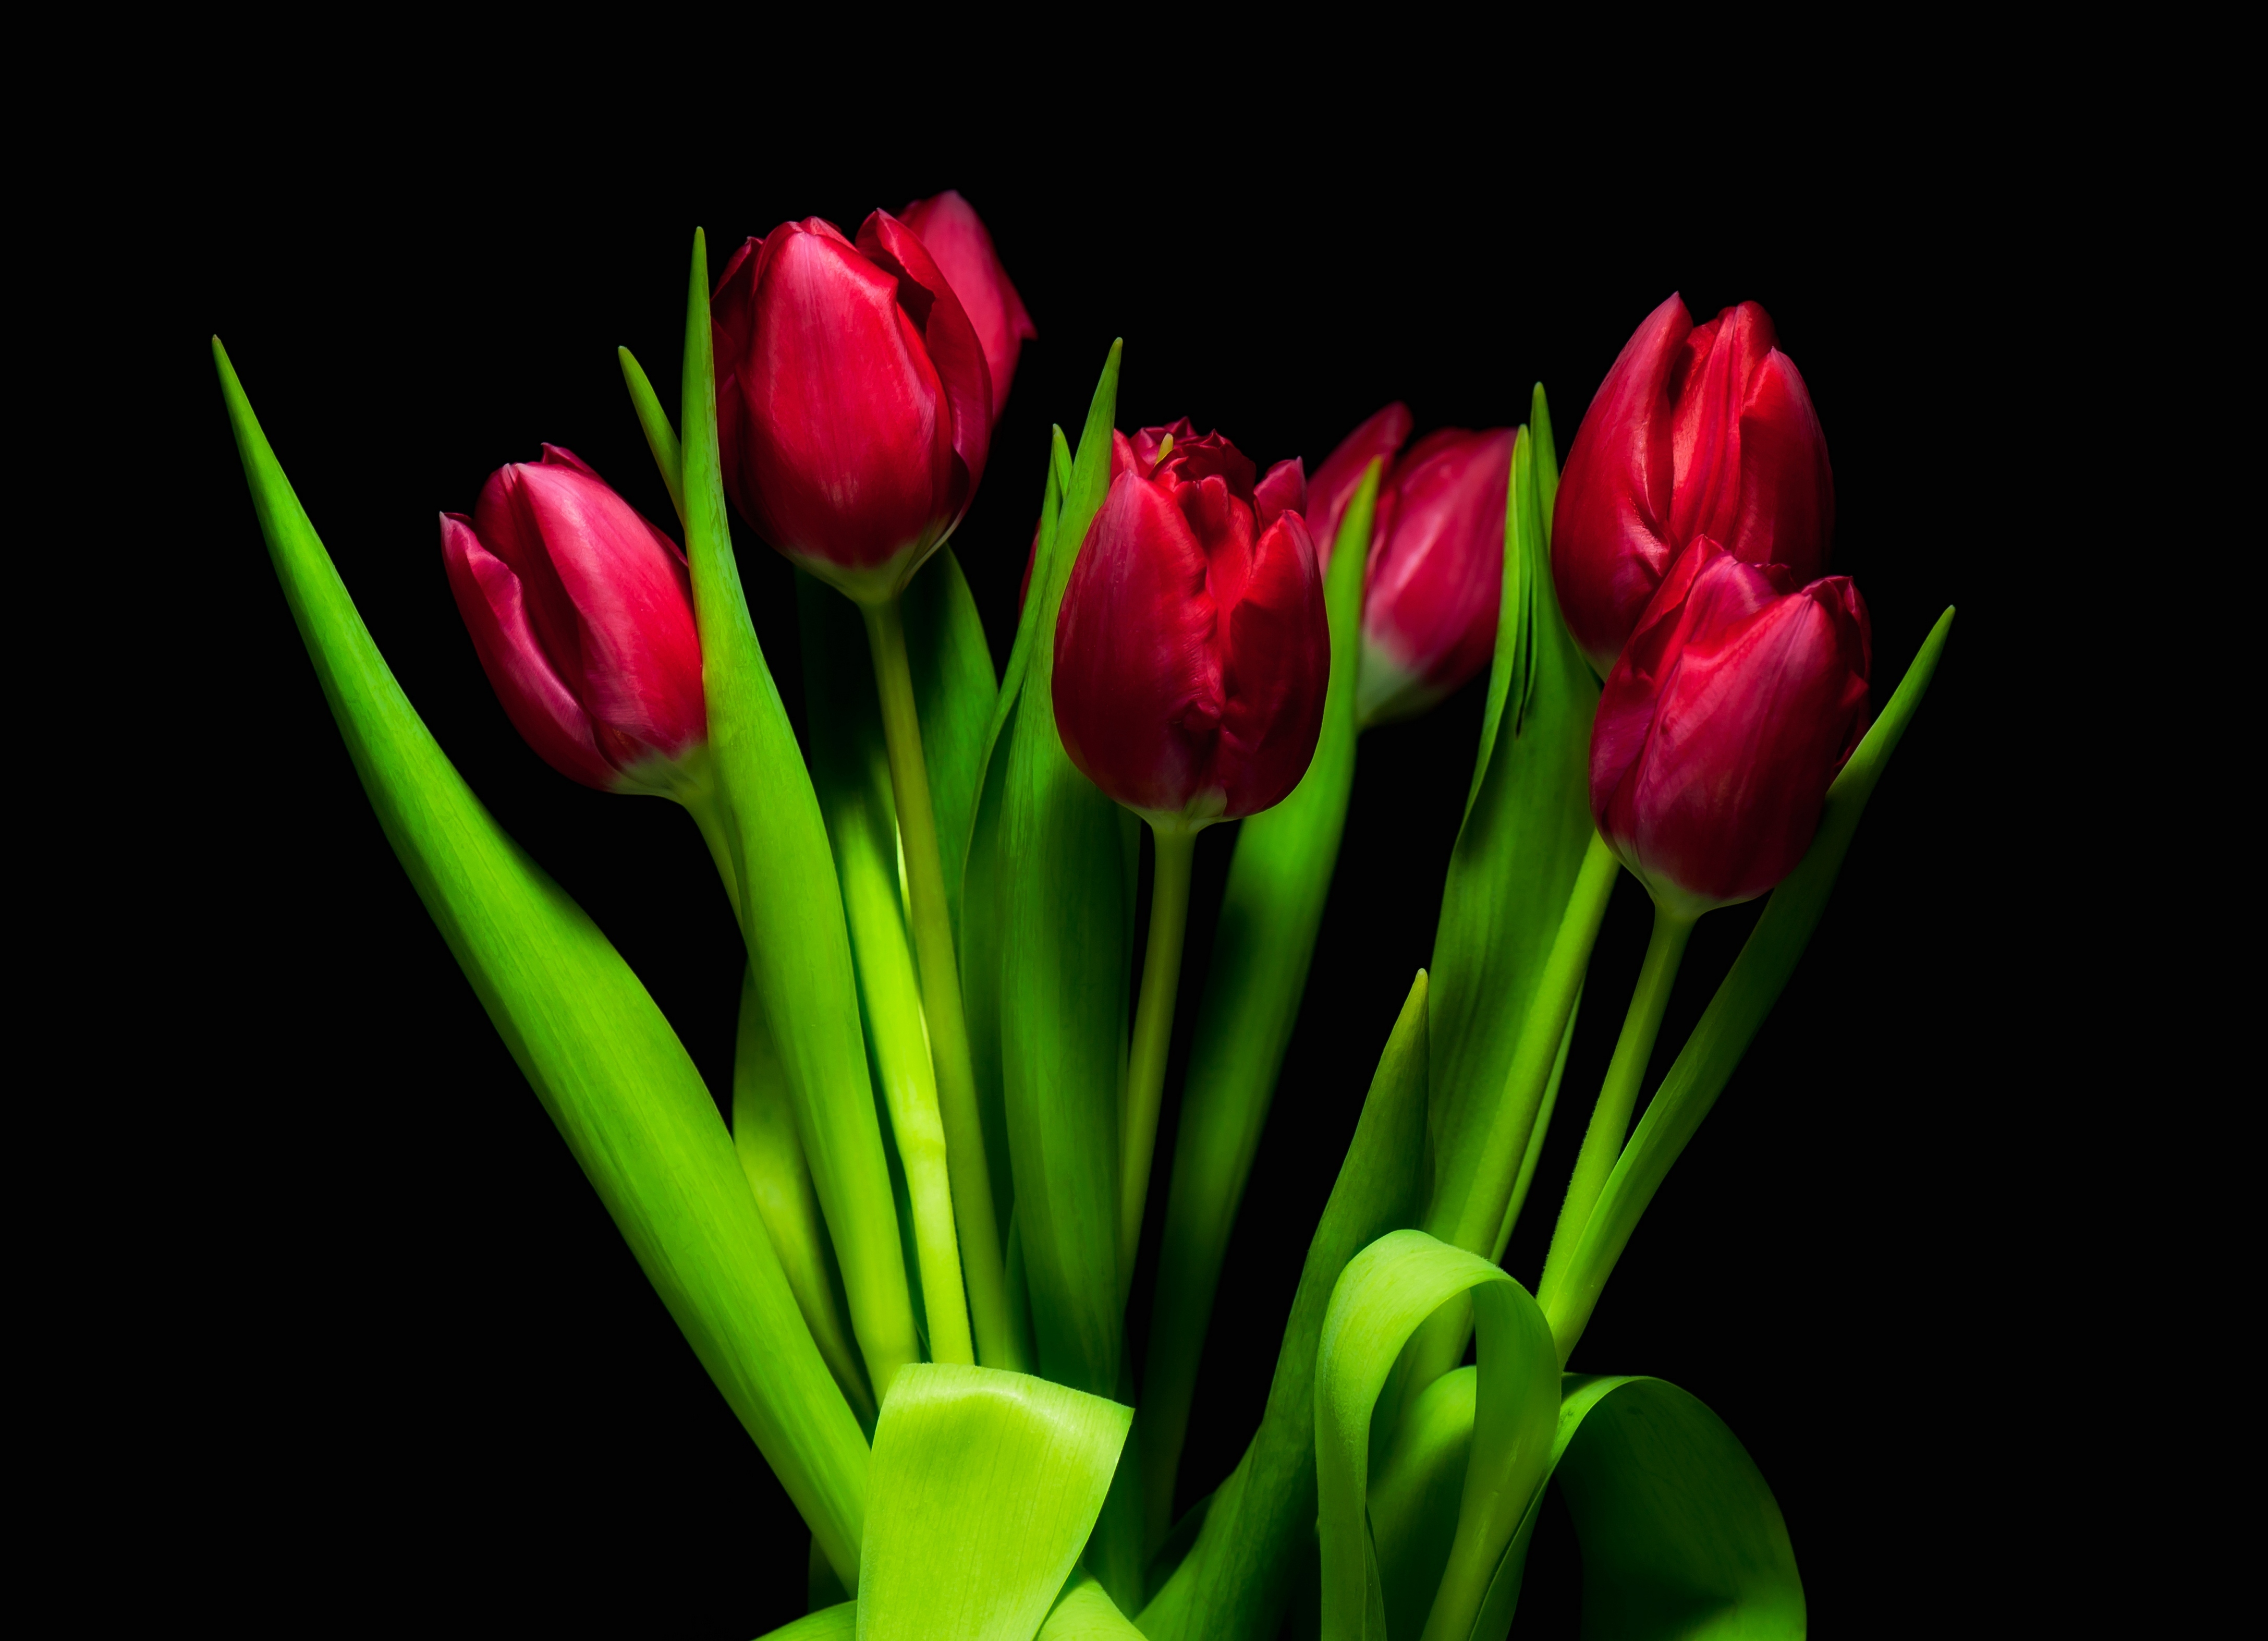 Обои с тюльпанами на телефон. Тюльпаны. Красные тюльпаны. Красивые тюльпаны. Тюльпаны на черном фоне.